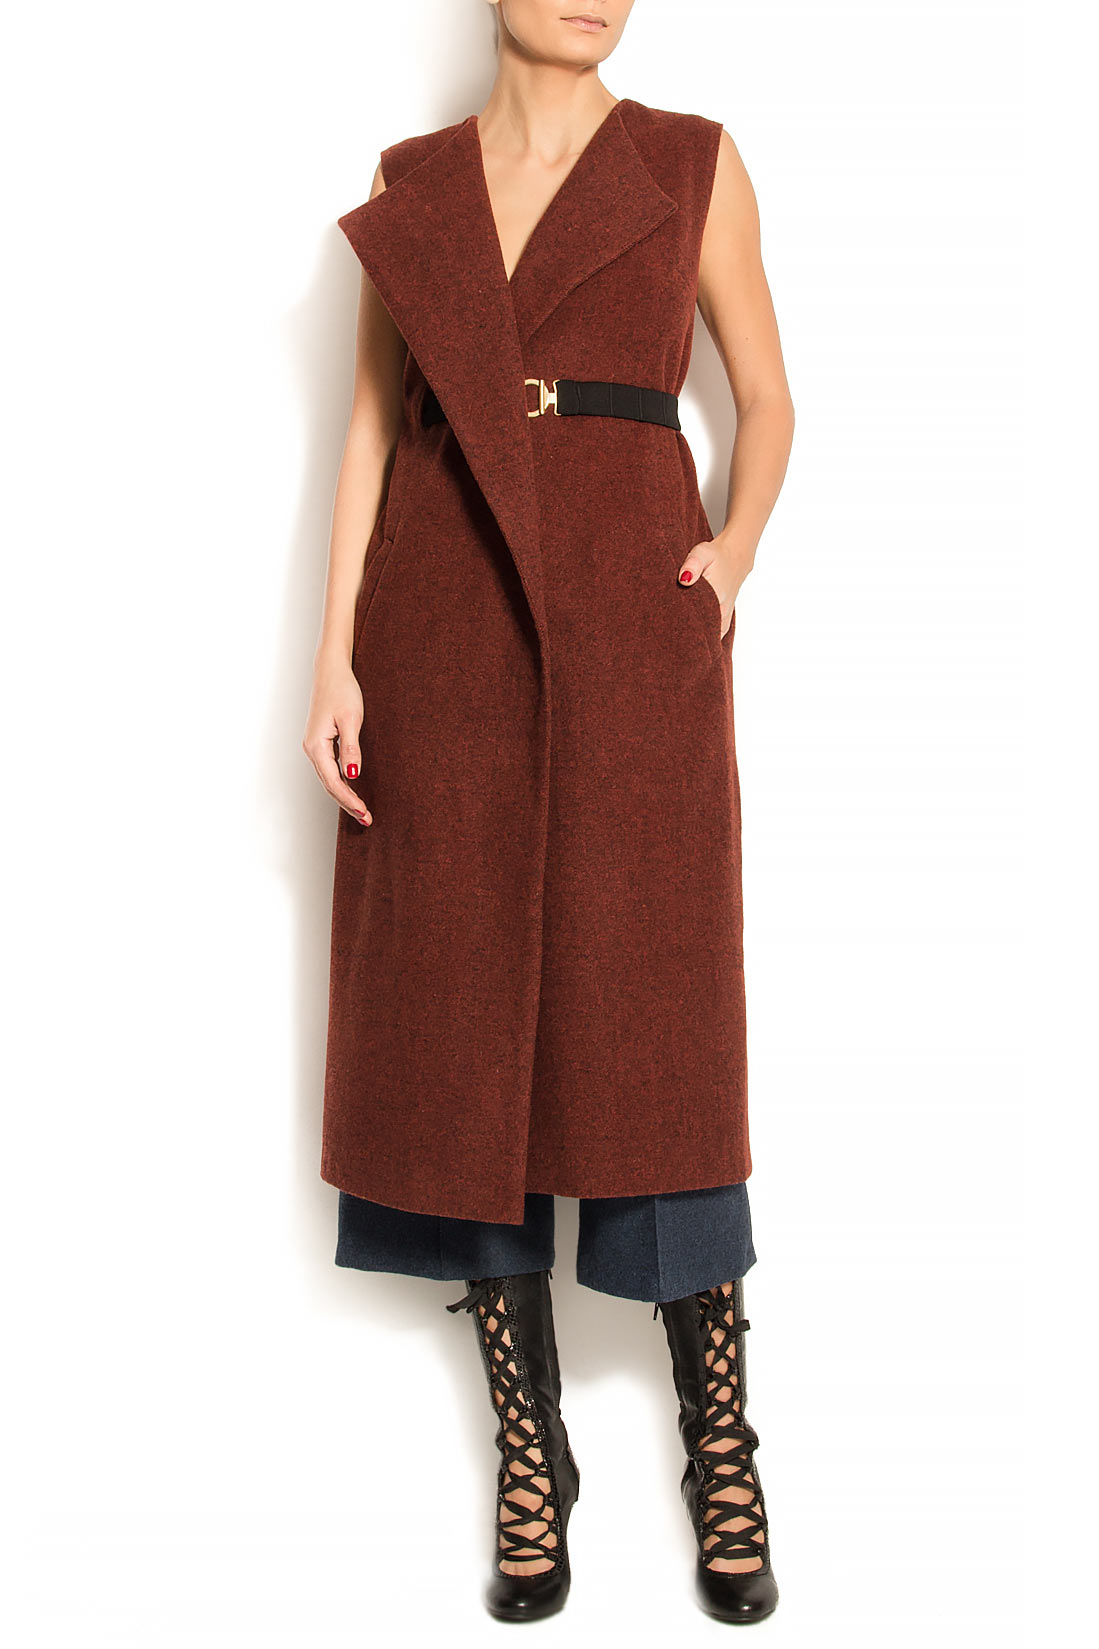 Vesta tip rochie din lana in doua culori ATU Body Couture imagine 0